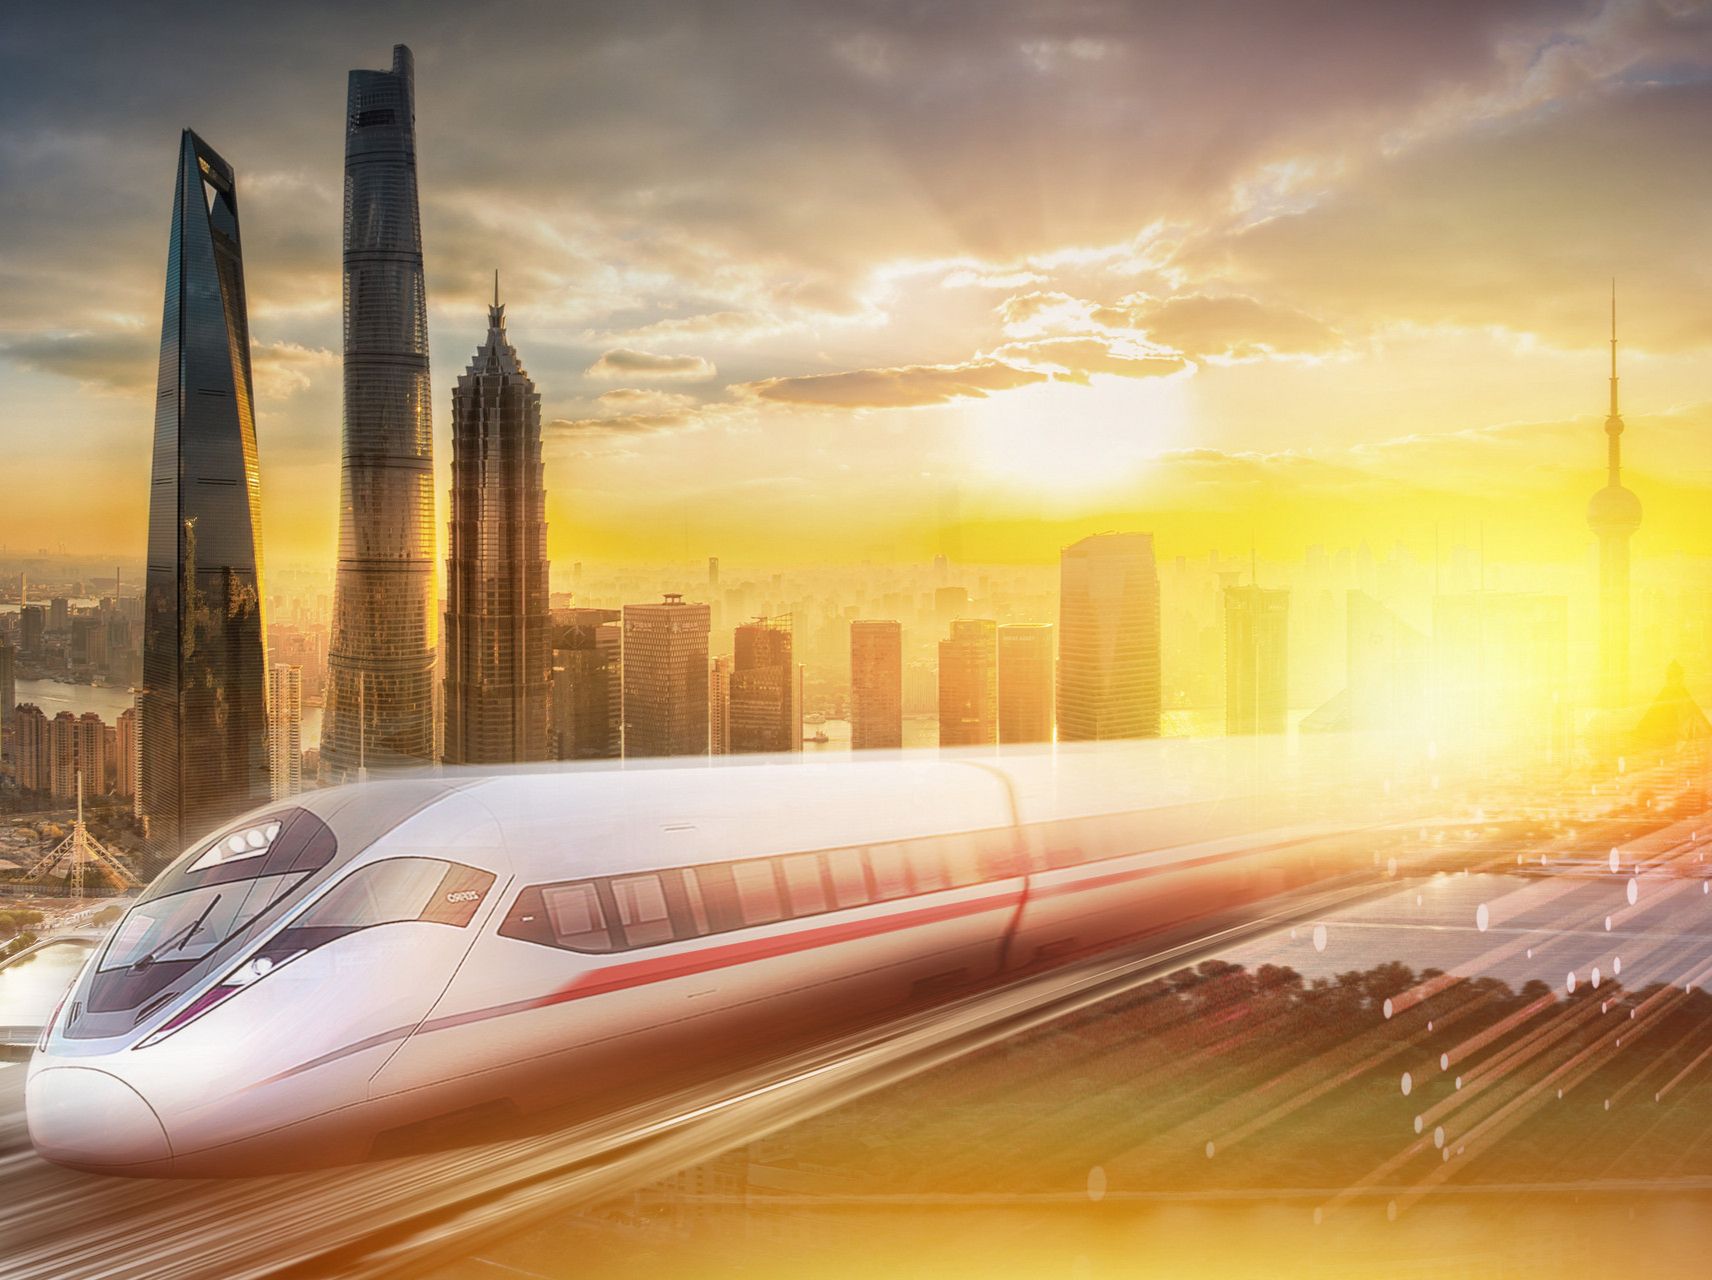 广东史上线路最长铁路项目,新建广州至湛江高速铁路开工 - 乐有家